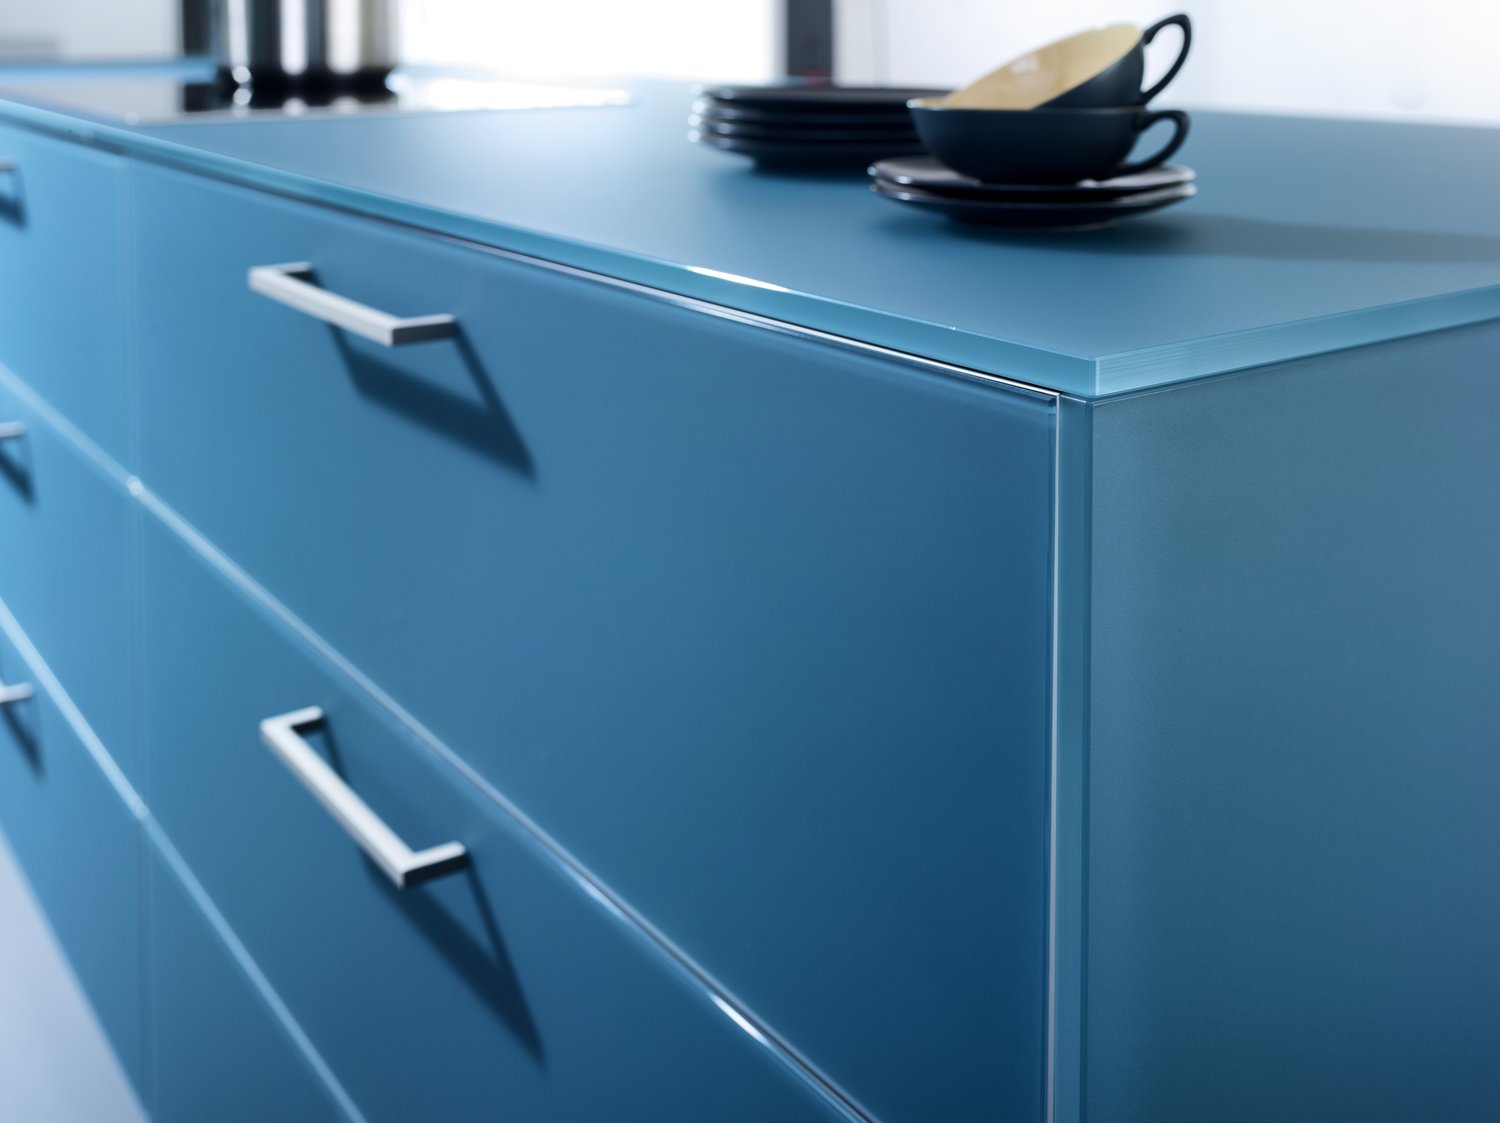 LEICHT LARGO-FG  IOS-M connaught kitchens baby blue cupboards details.jpg